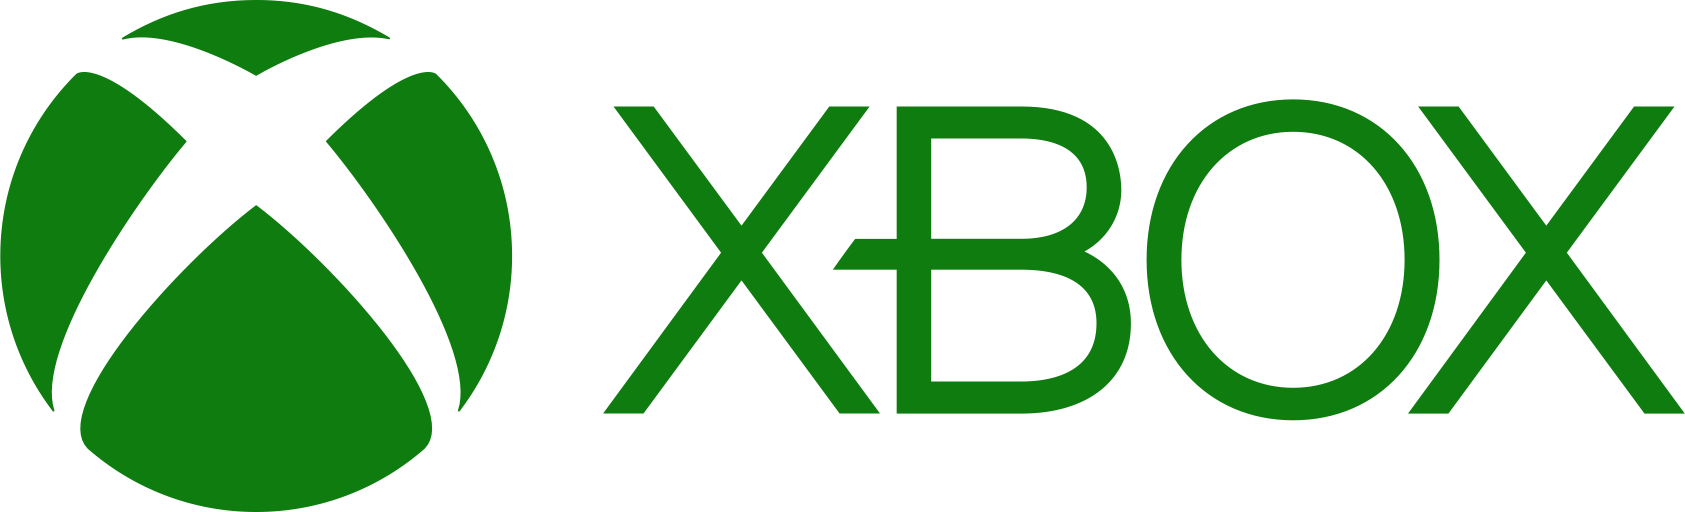 Xbox Transparent Image